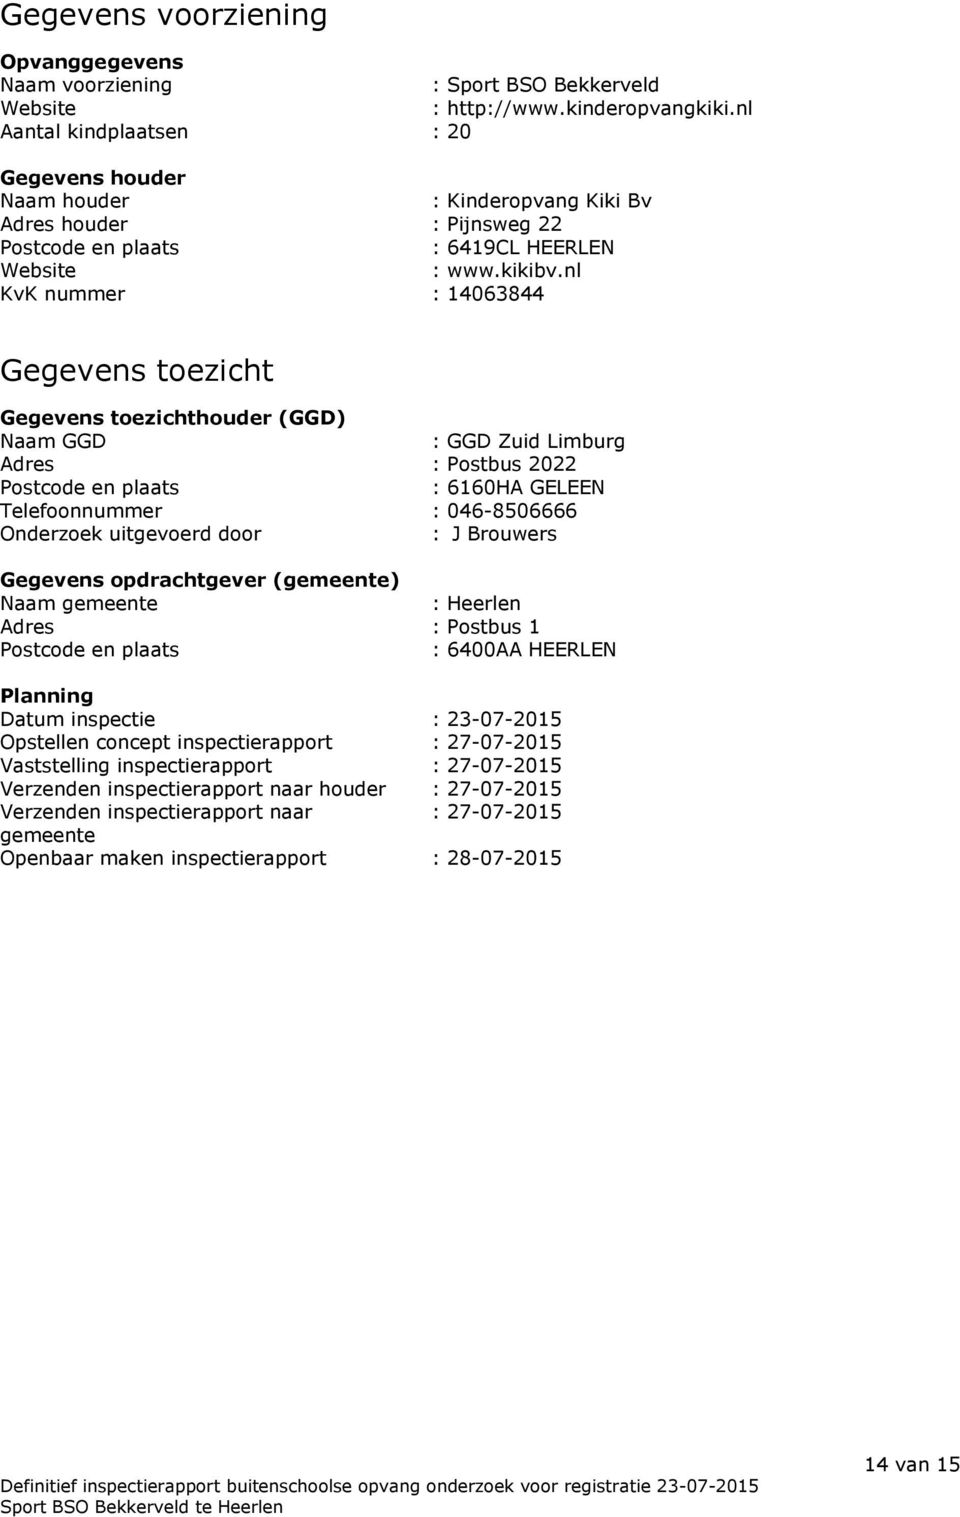 nl KvK nummer : 14063844 Gegevens toezicht Gegevens toezichthouder (GGD) Naam GGD : GGD Zuid Limburg Adres : Postbus 2022 Postcode en plaats : 6160HA GELEEN Telefoonnummer : 046-8506666 Onderzoek